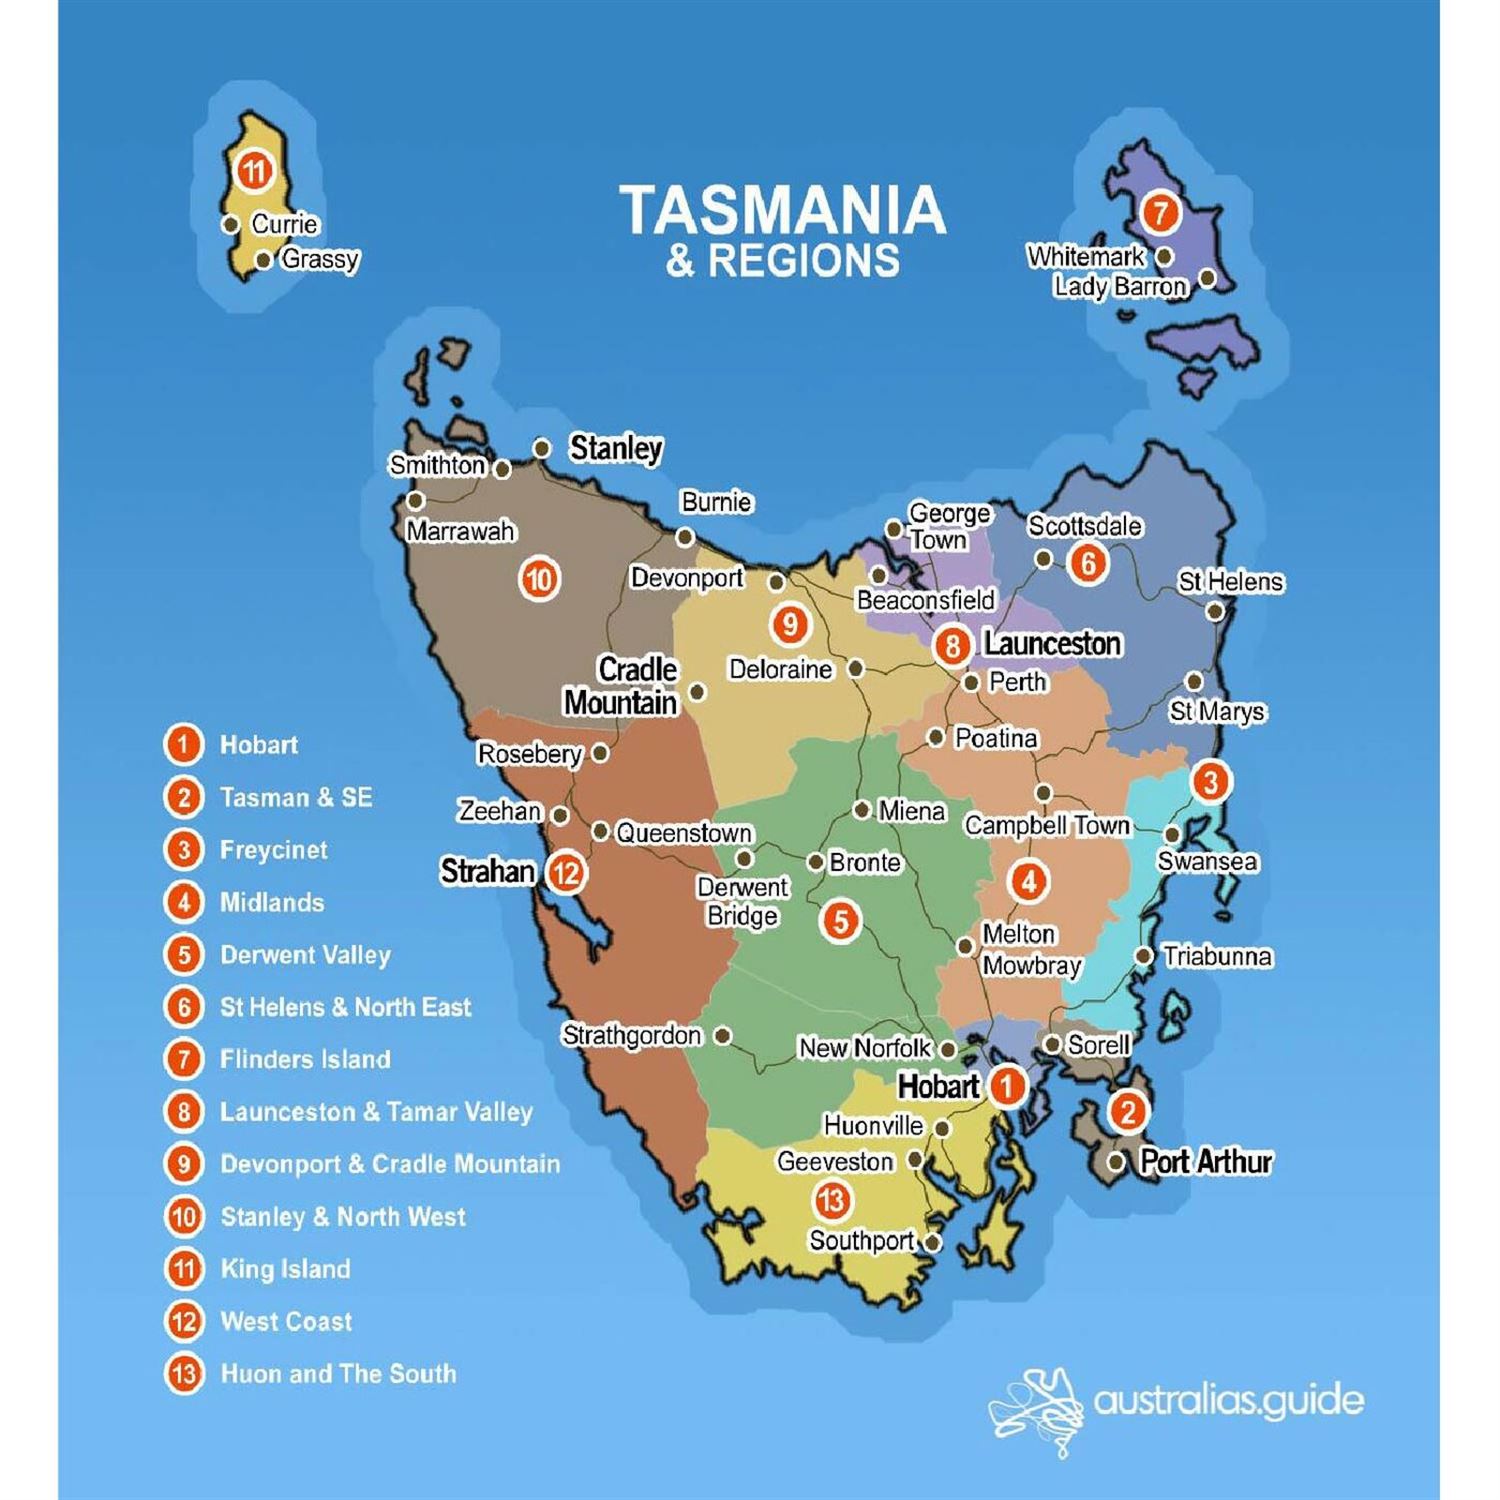 Where is Tasmania?